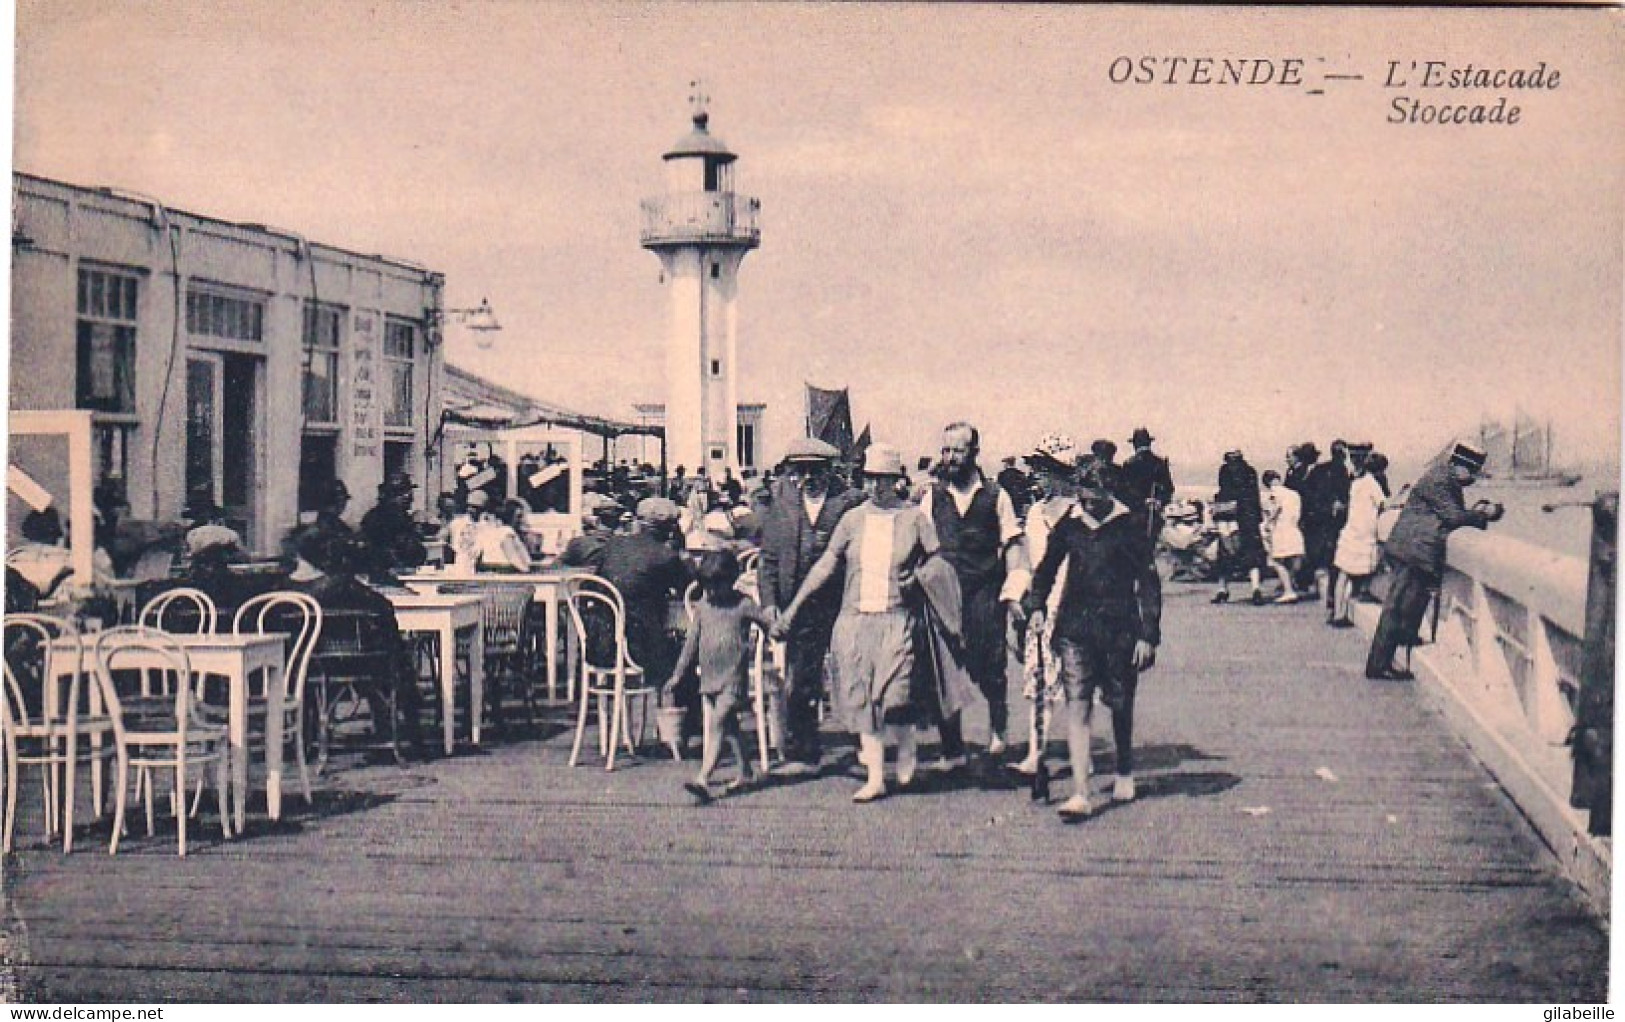 OOSTENDE - OSTENDE -  L'estacade - Stoccade - Oostende